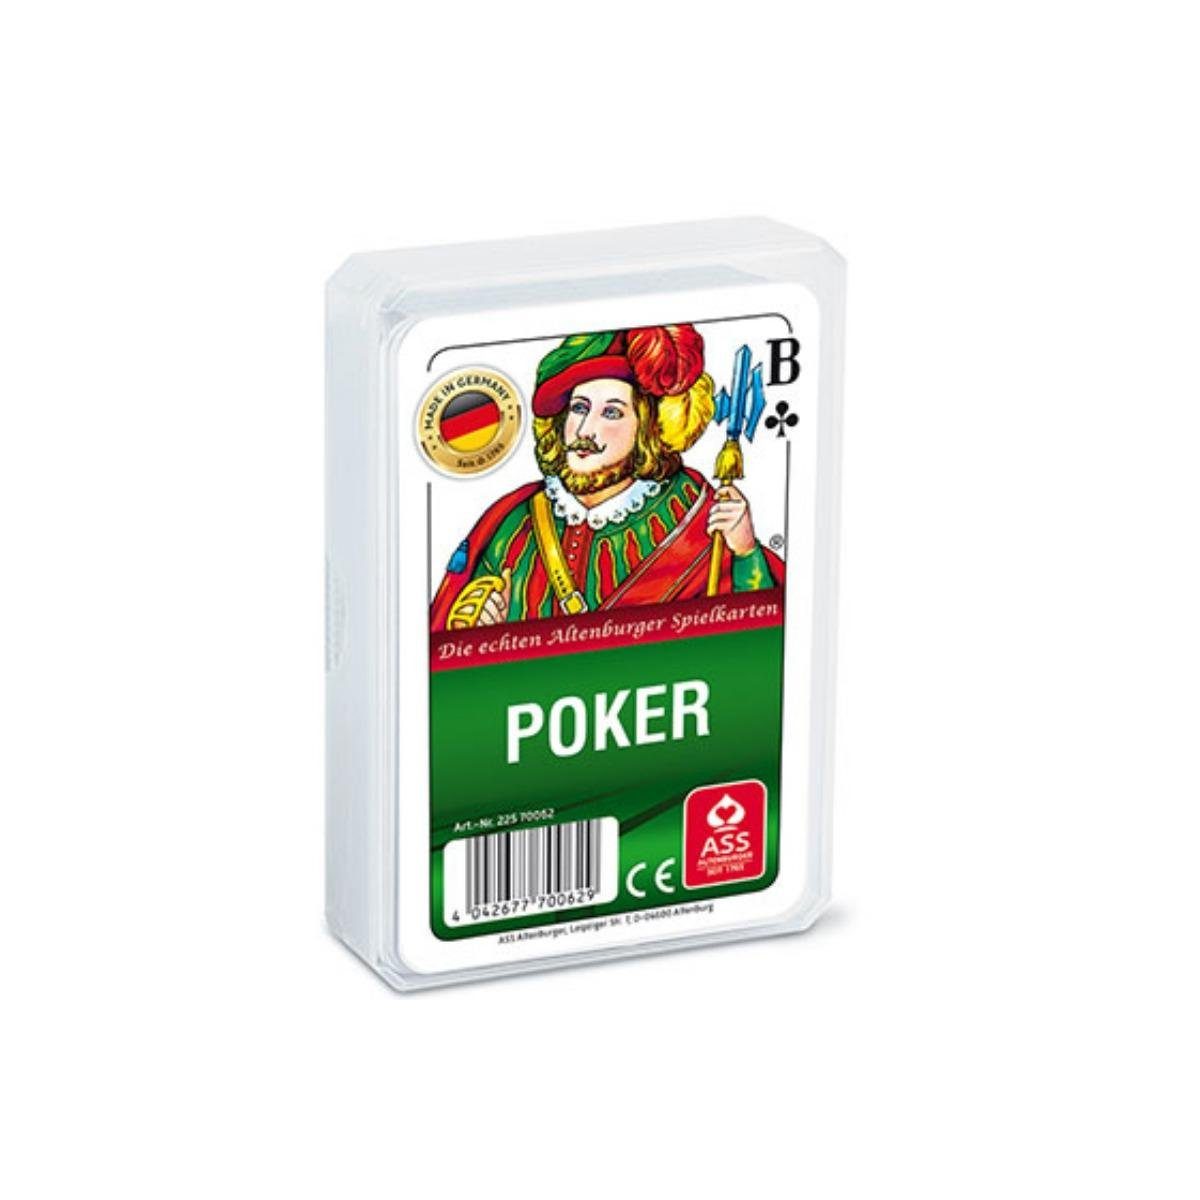 ASS Altenburger Spiel, Familienspiel 22570062 - Poker, französisches Bild, Strategiespiel